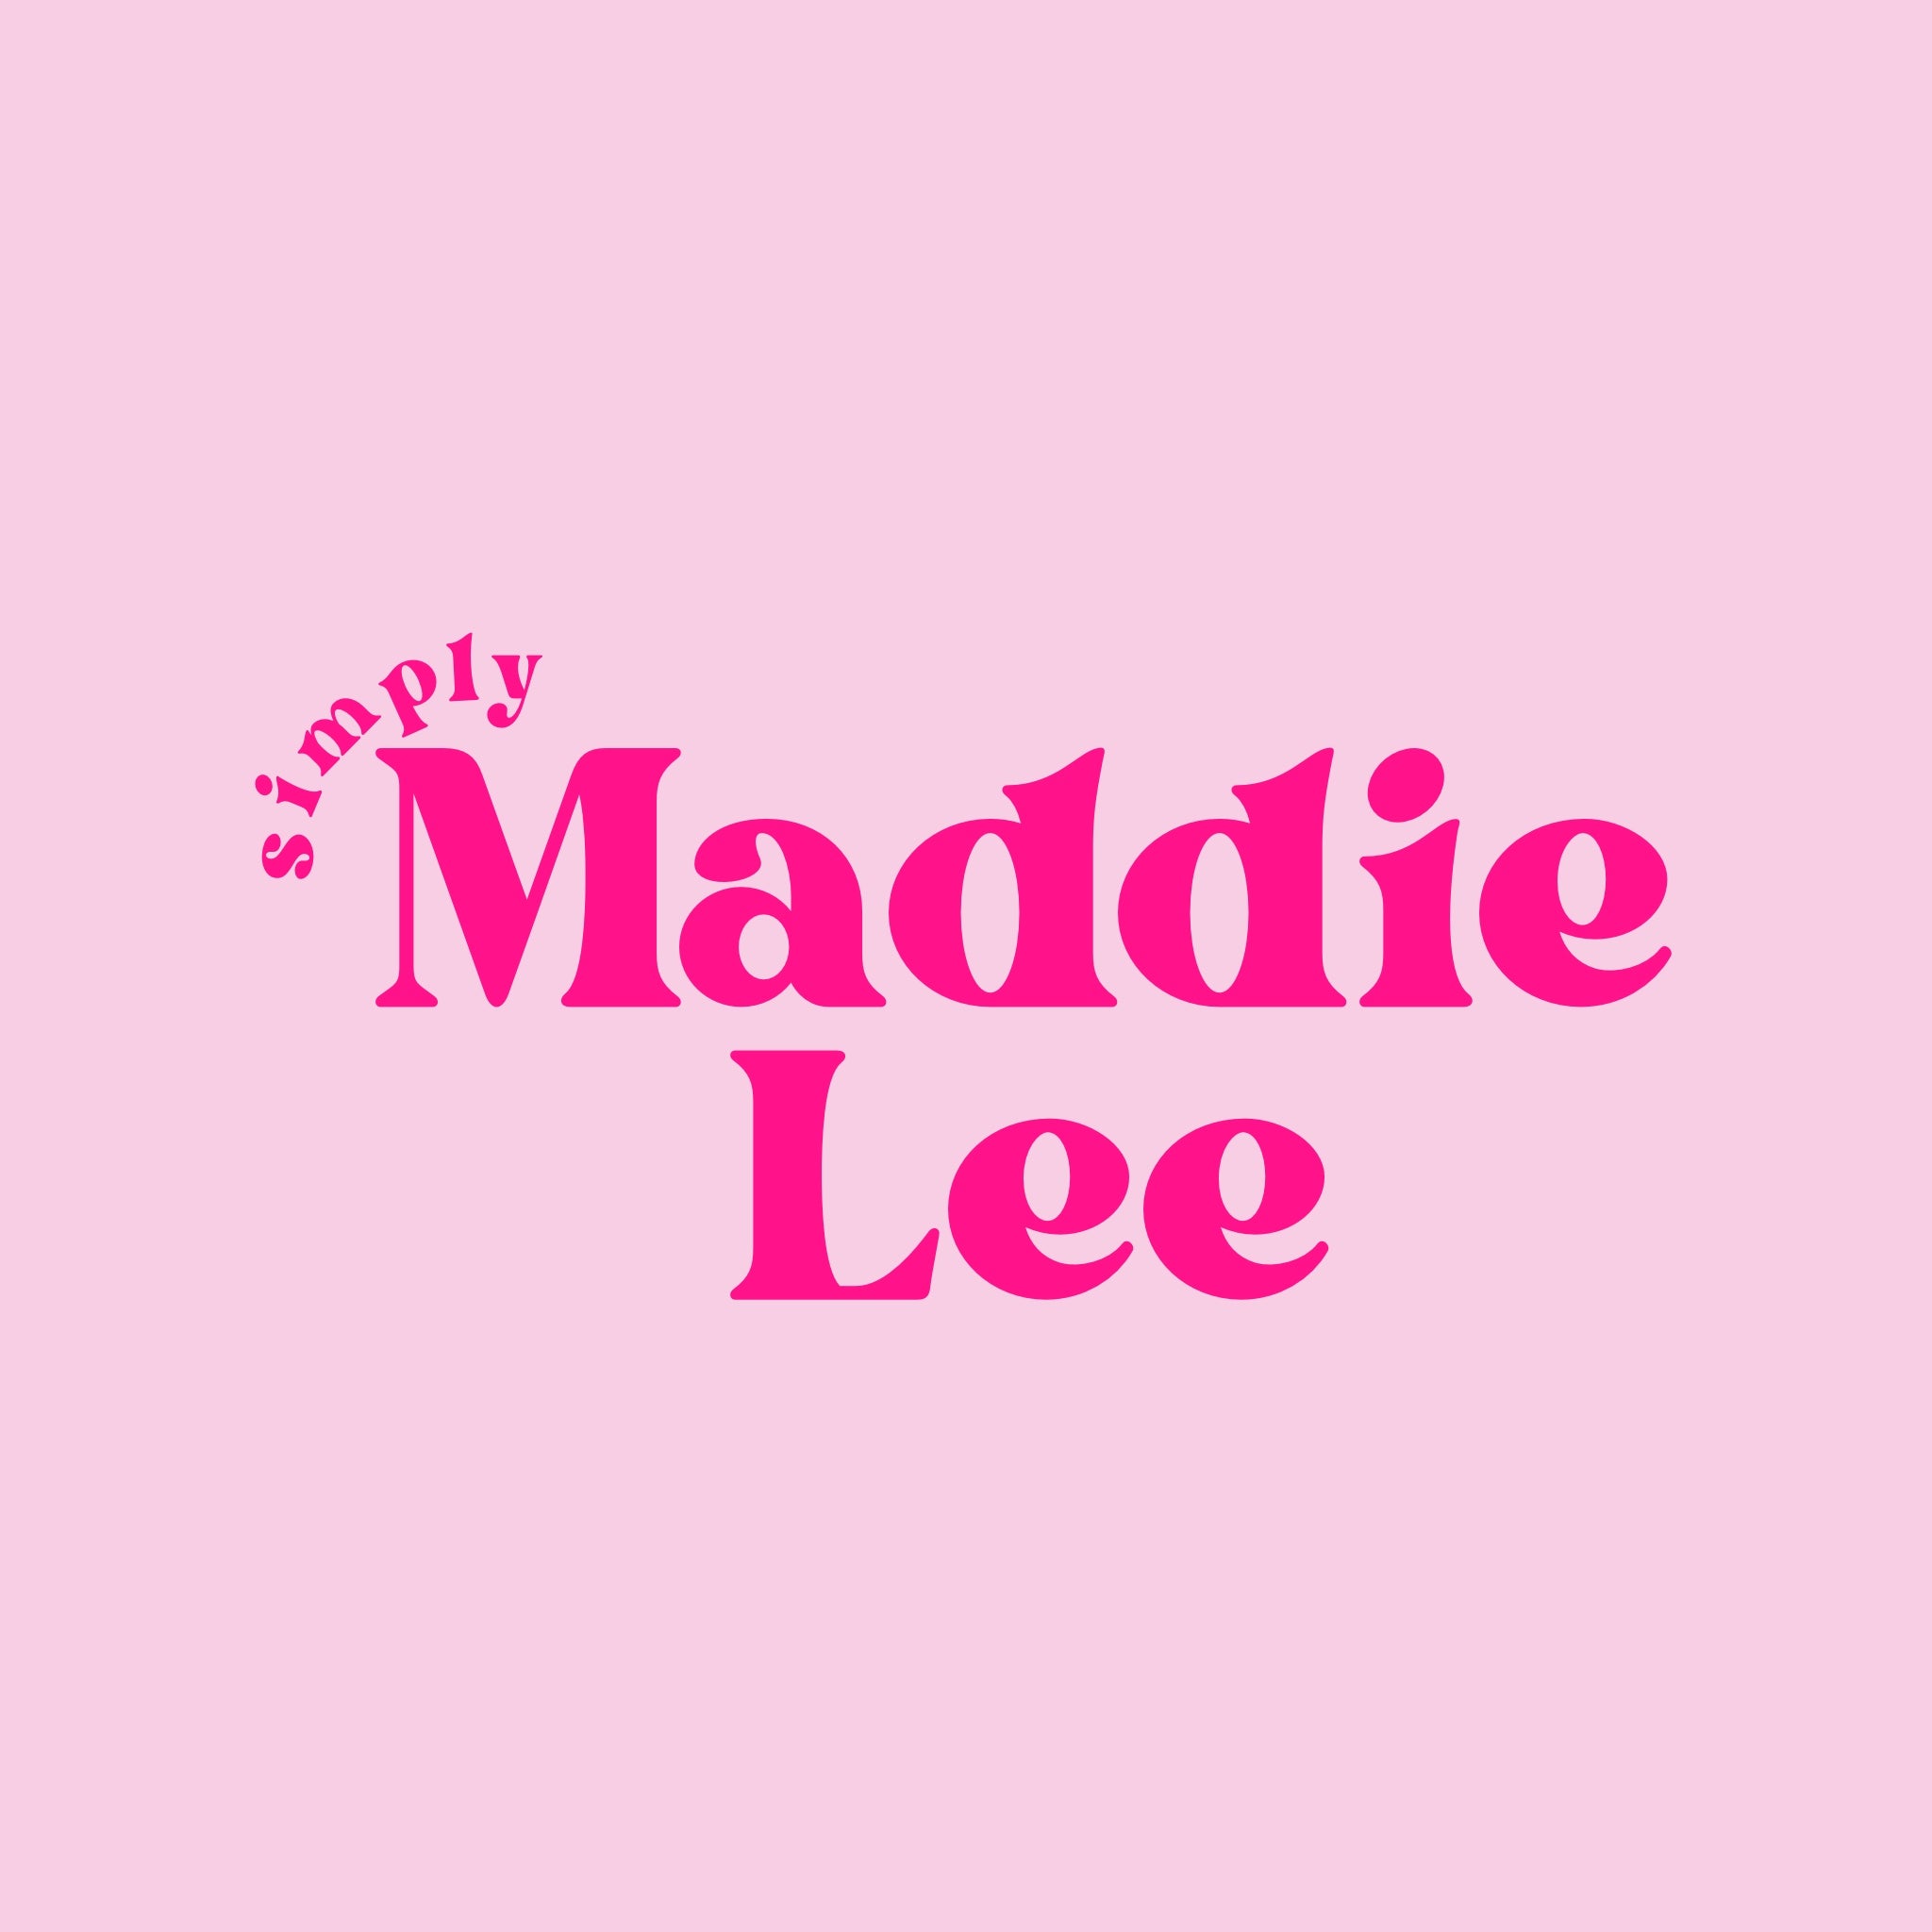 Simply Maddie Lee